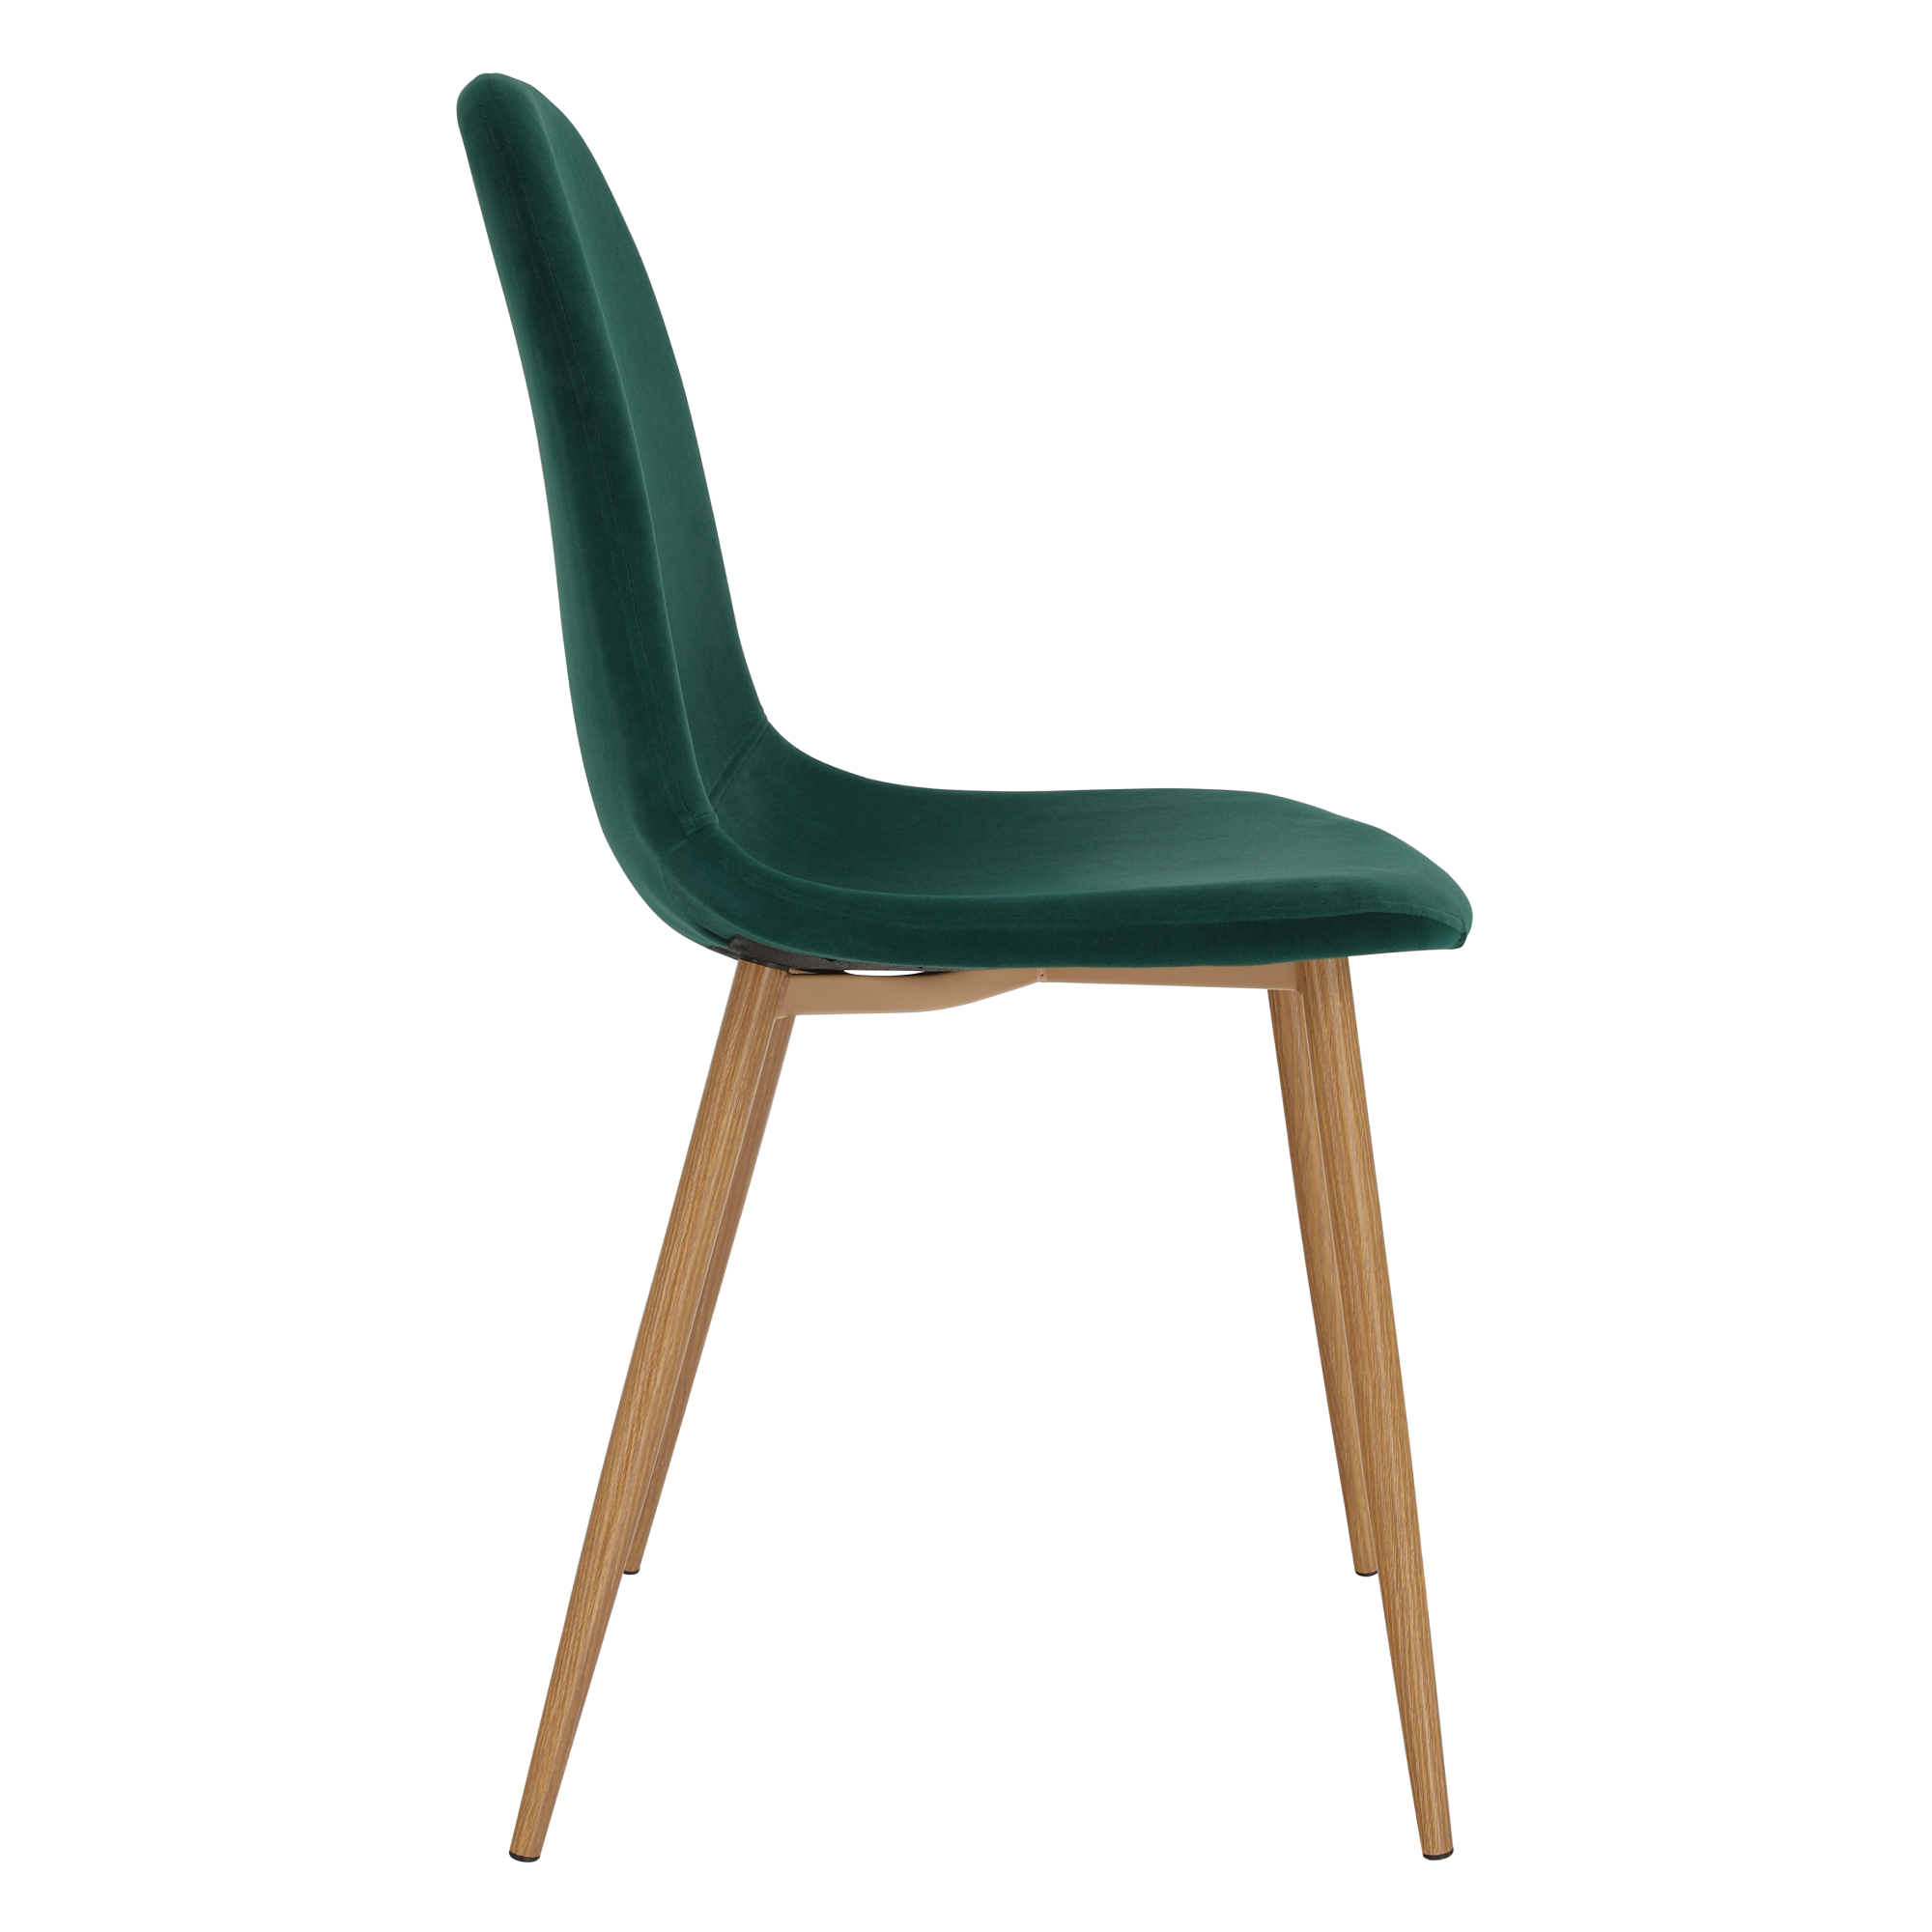 Židle, smaragdová Velvet látka / buk, LEGA